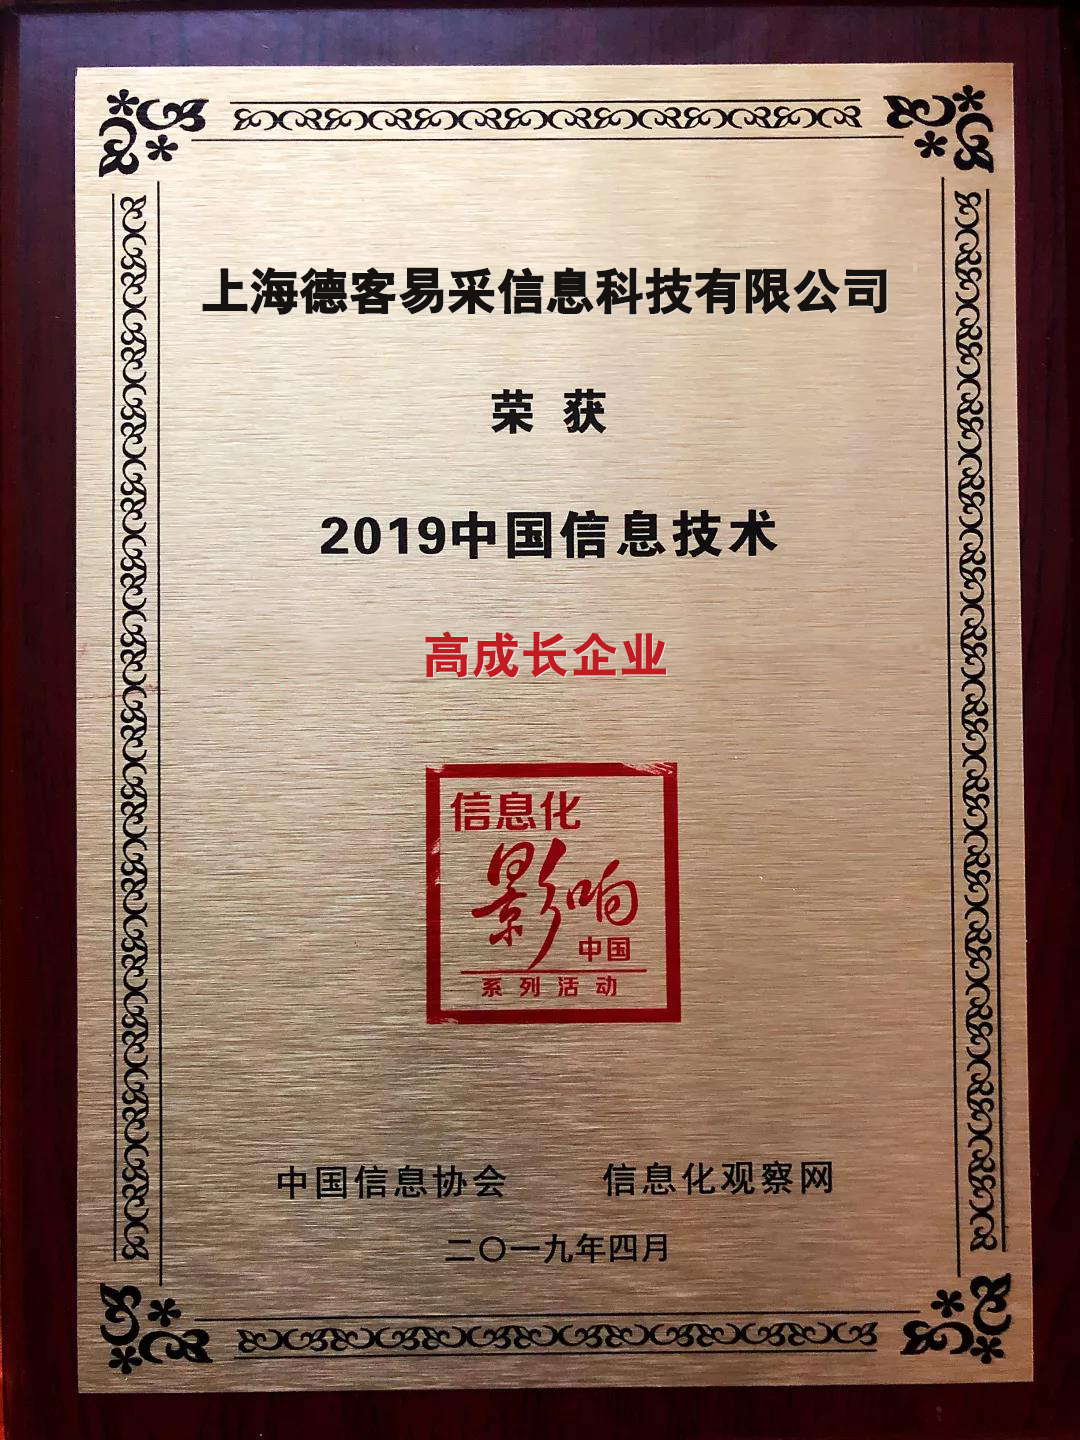 德客易采荣膺2019中国信息技术大会两大奖项 55